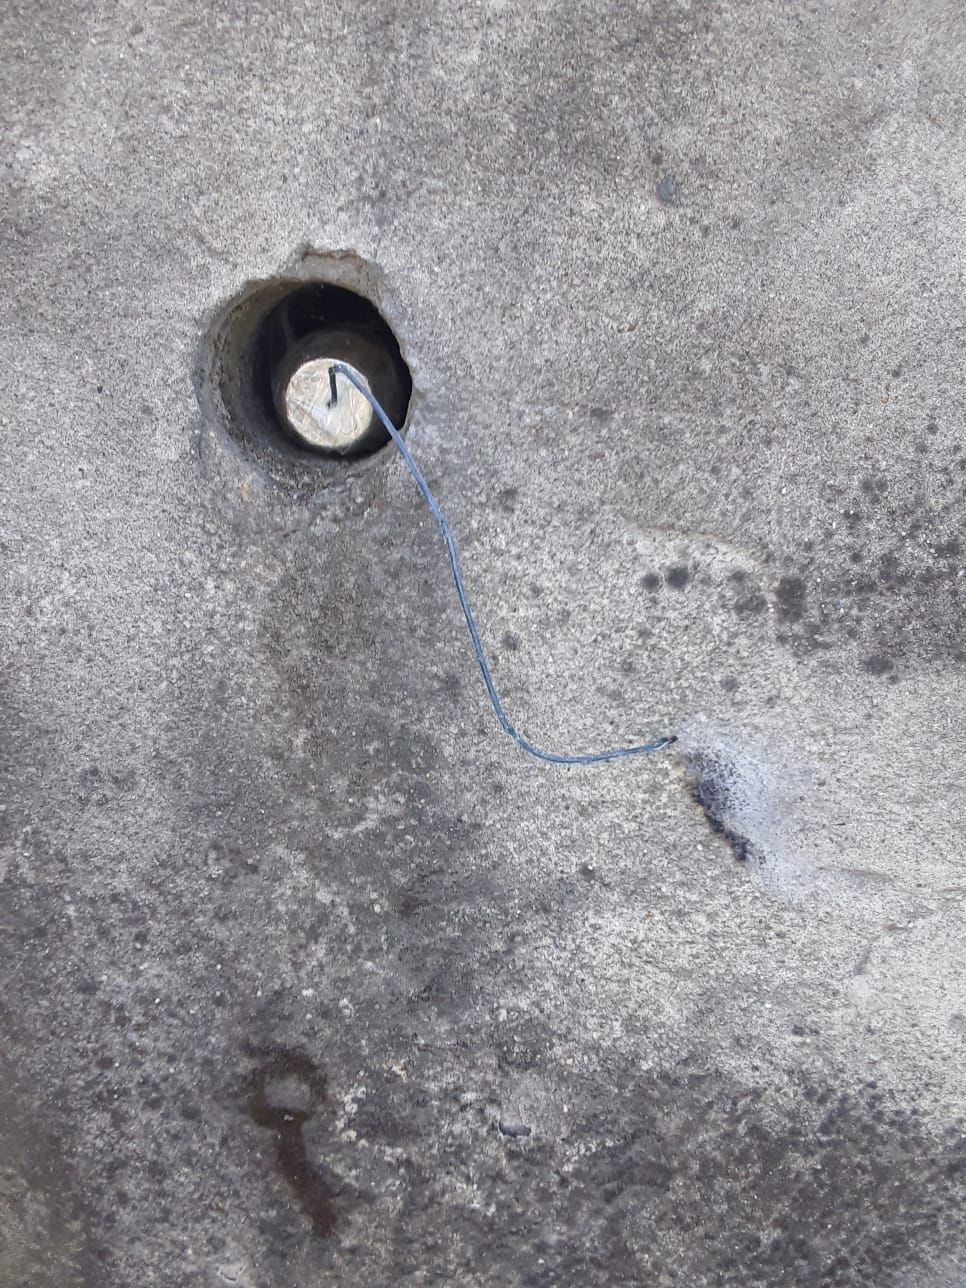 istanbul valiliginden basaksehirde bulunan bomba duzenegi ile ilgili aciklama 0 4F9LT459